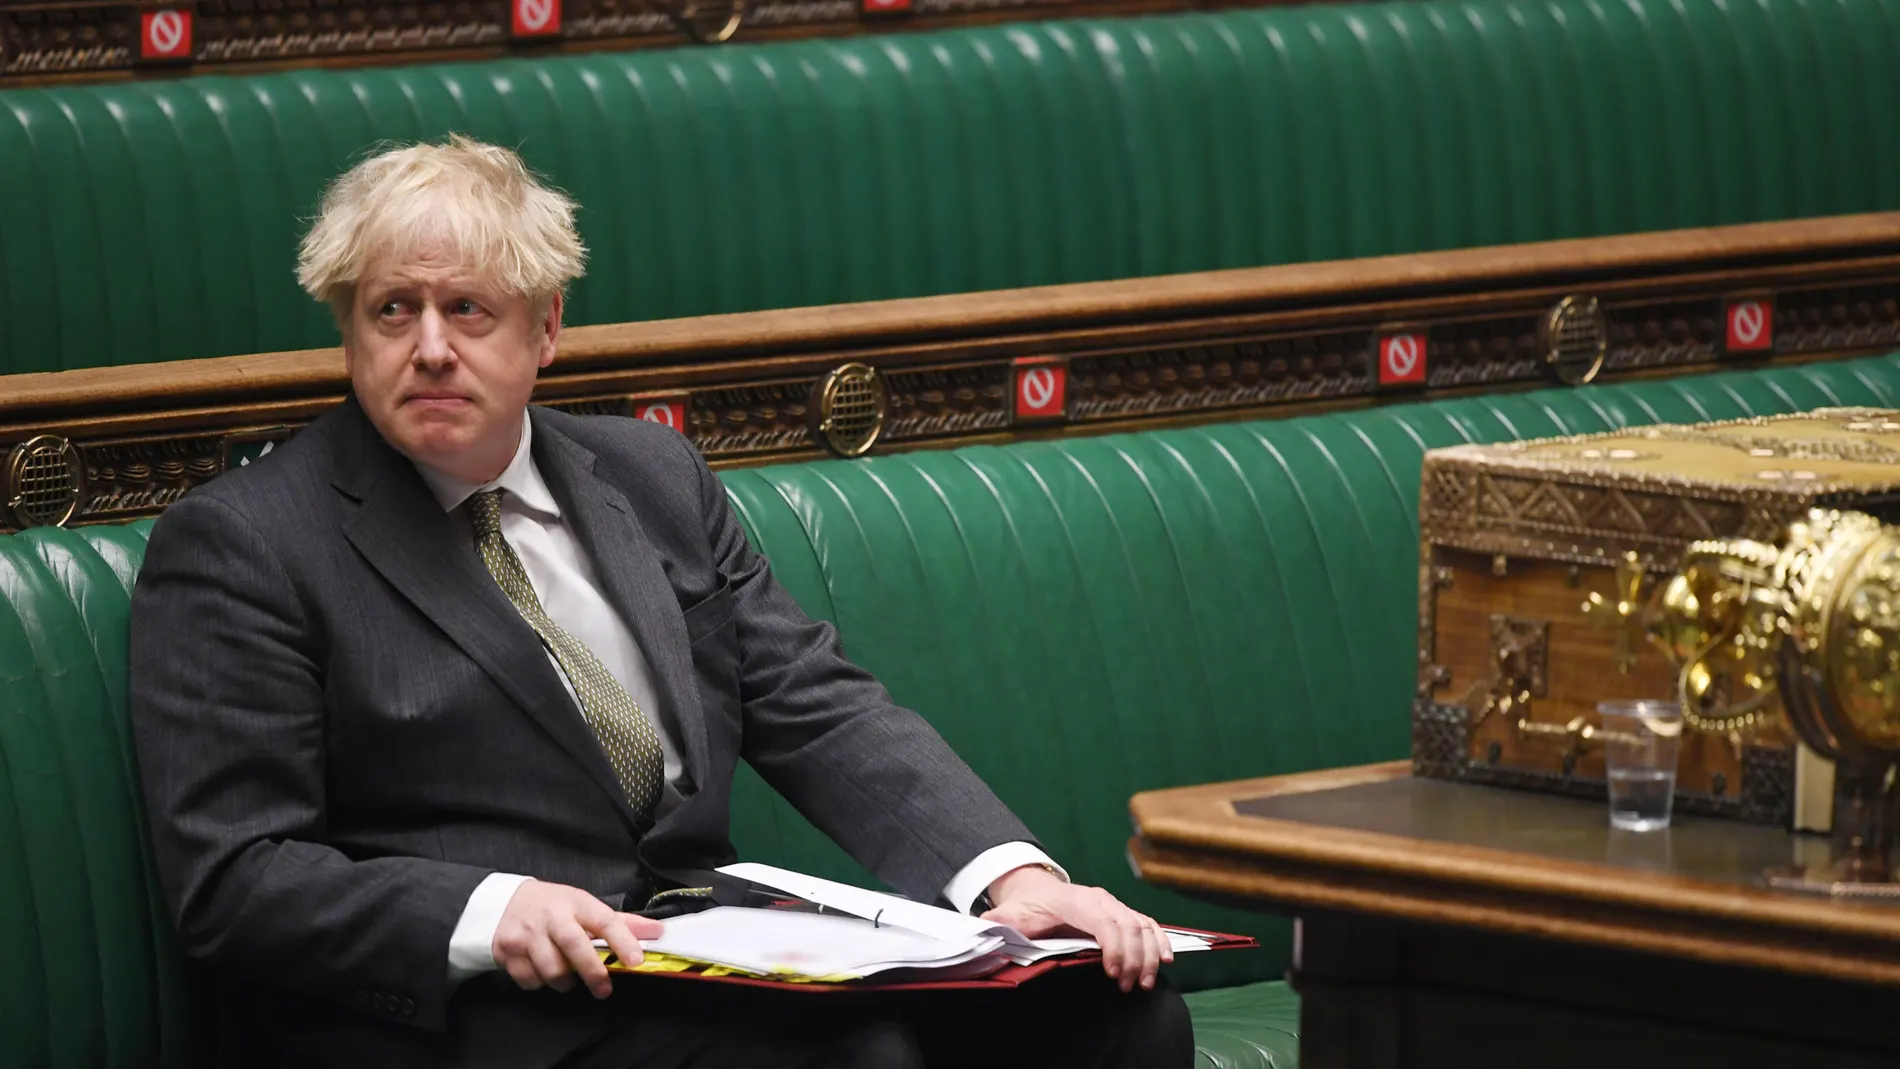 El "premier" Boris Johnson en la Cámara de los Comunes